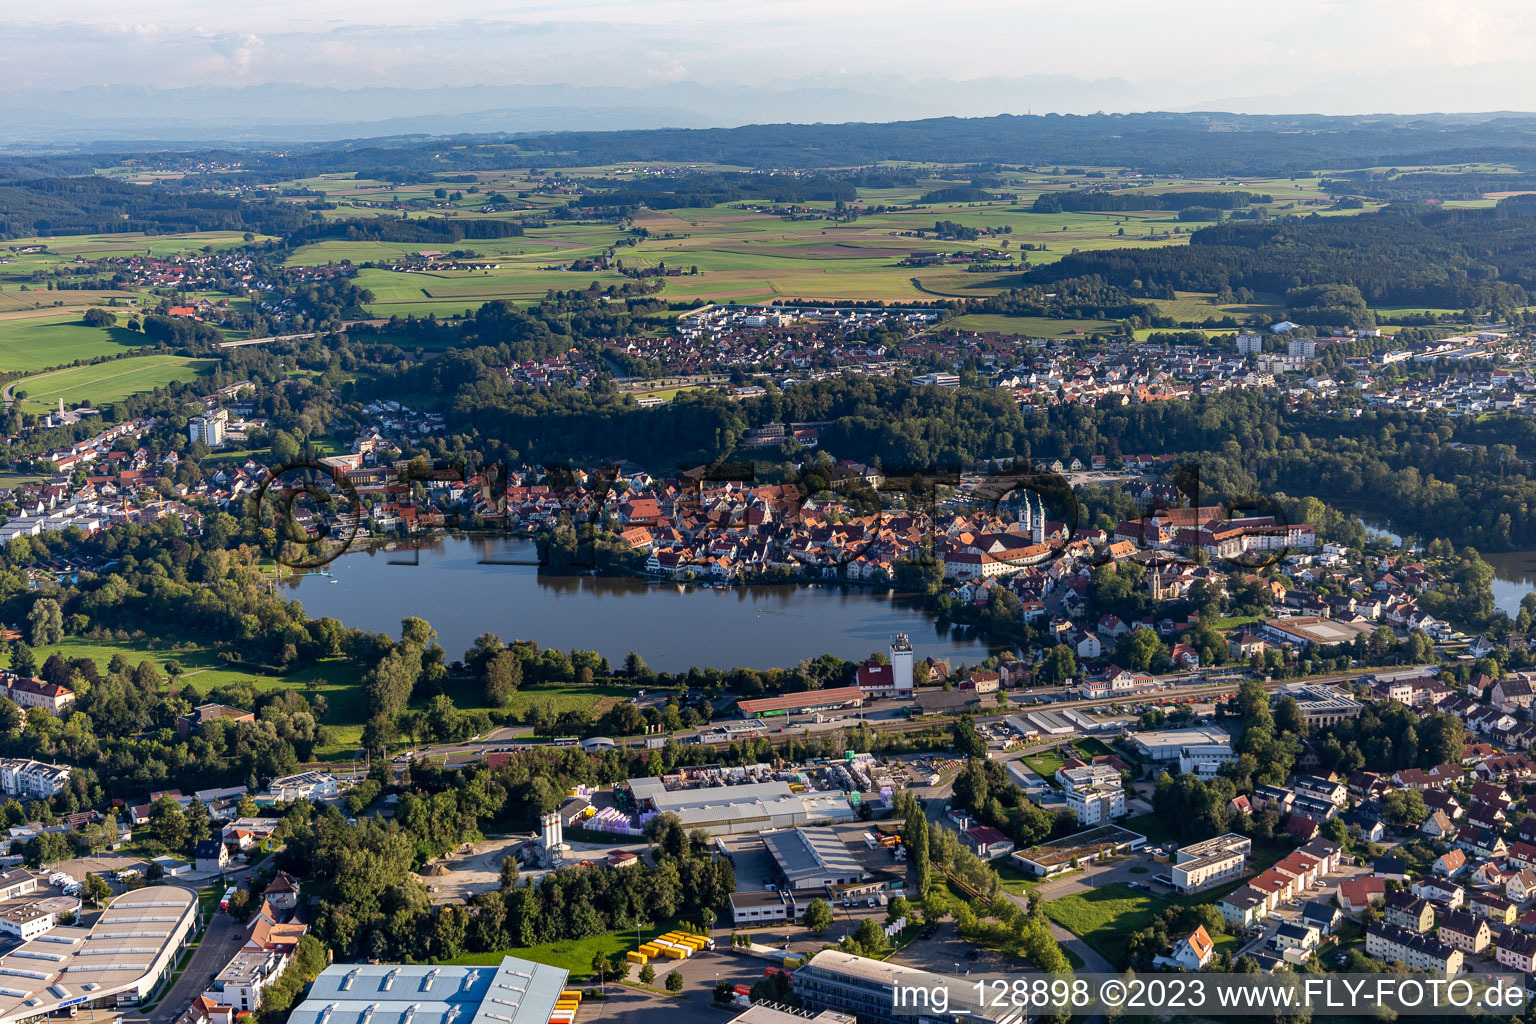 Luftbild von Stadtansicht des Innenstadtbereiches an den Uferbereichen des Stadt See in Bad Waldsee im Bundesland Baden-Württemberg, Deutschland